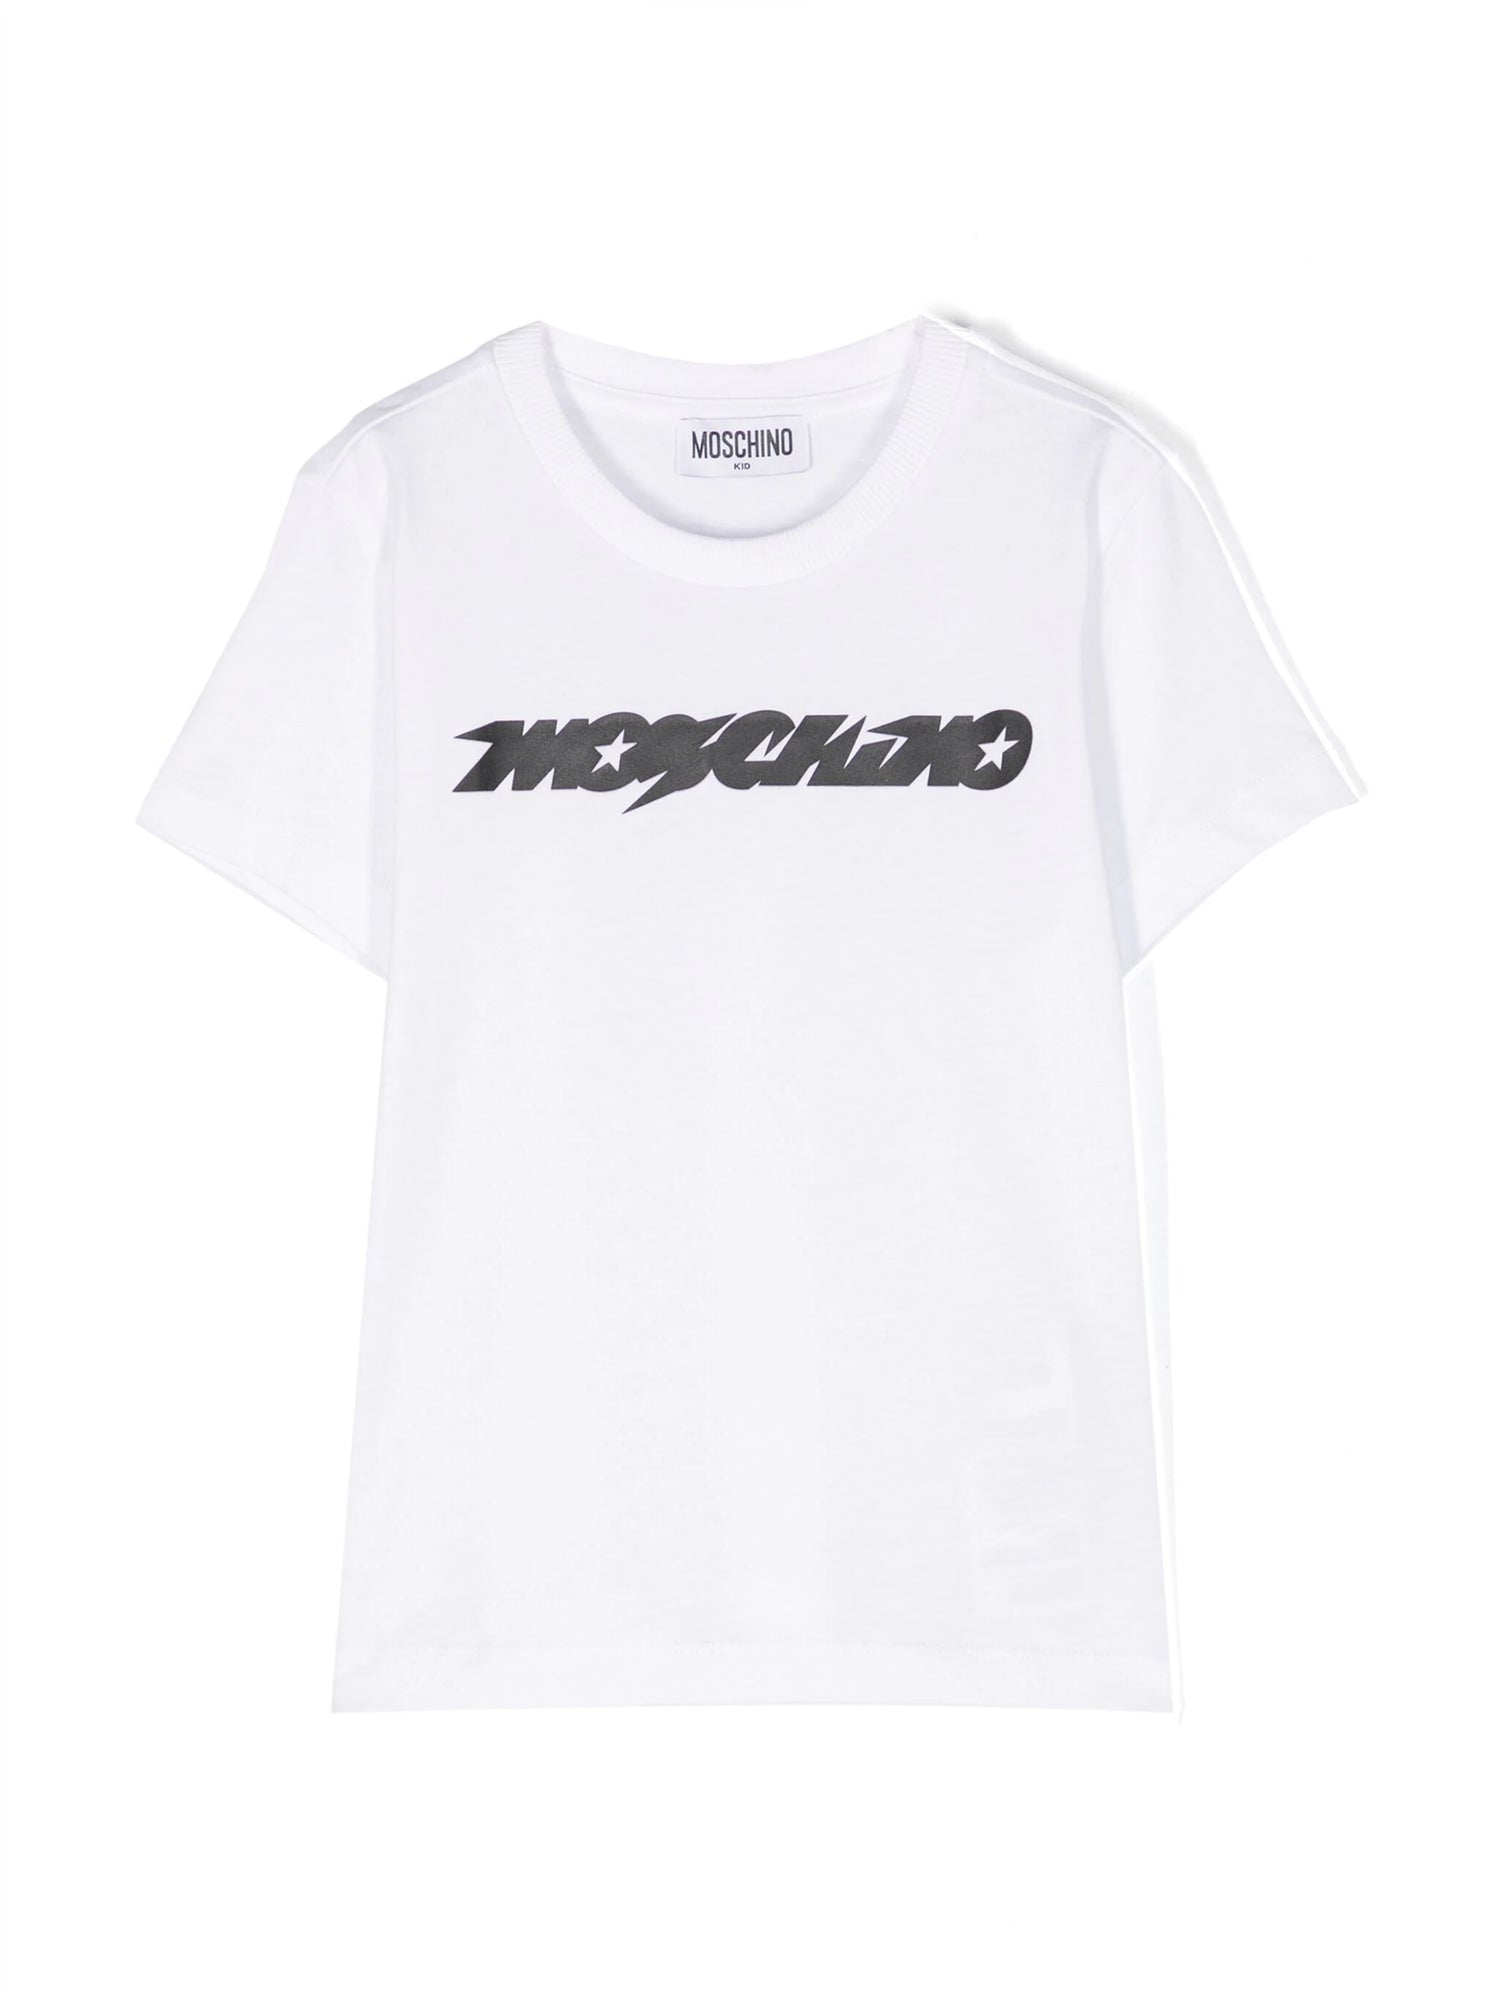 Moschino Sand Star Logo Tee Shirt